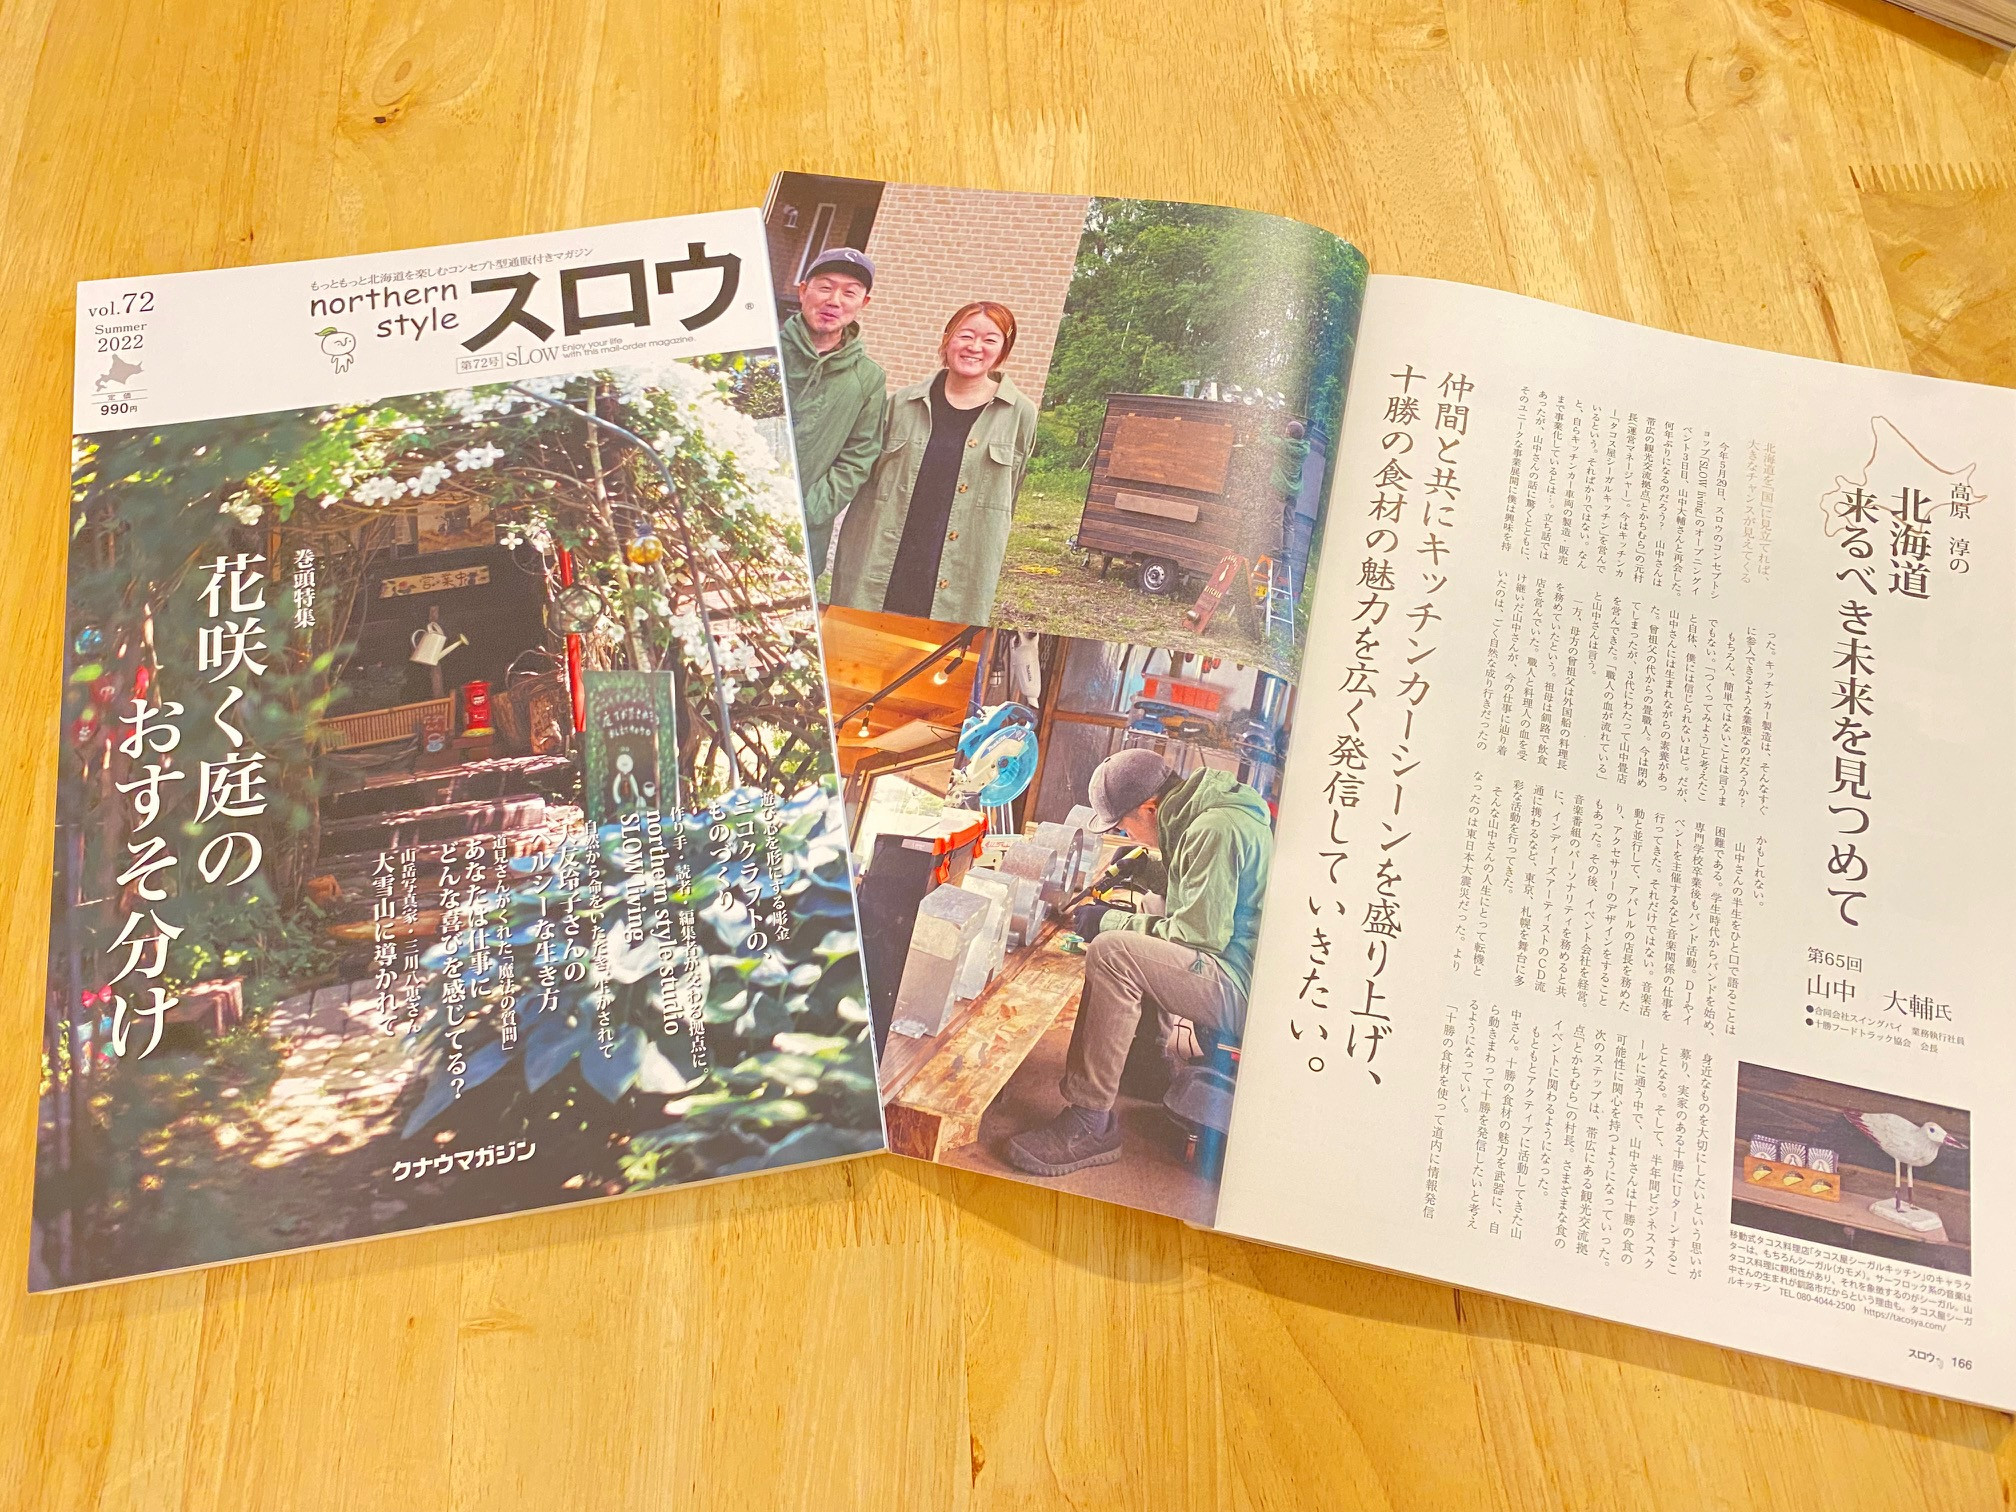 北海道を代表するマガジン『northen style スロウ』(72号)にて5ページに渡り活動をご掲載頂きました！